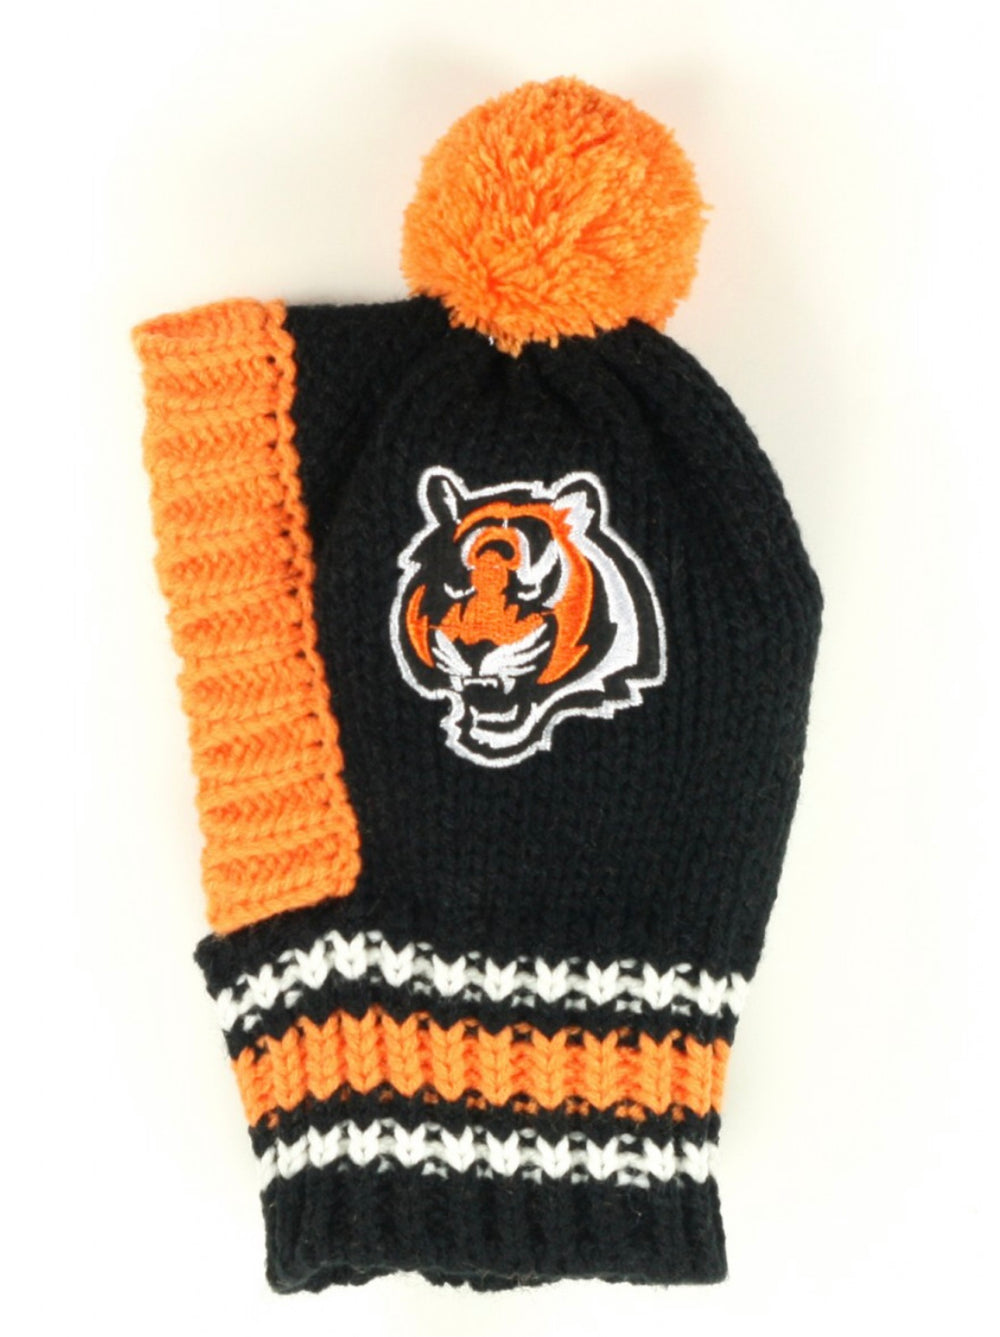 NFL Knit Hat - Bengals